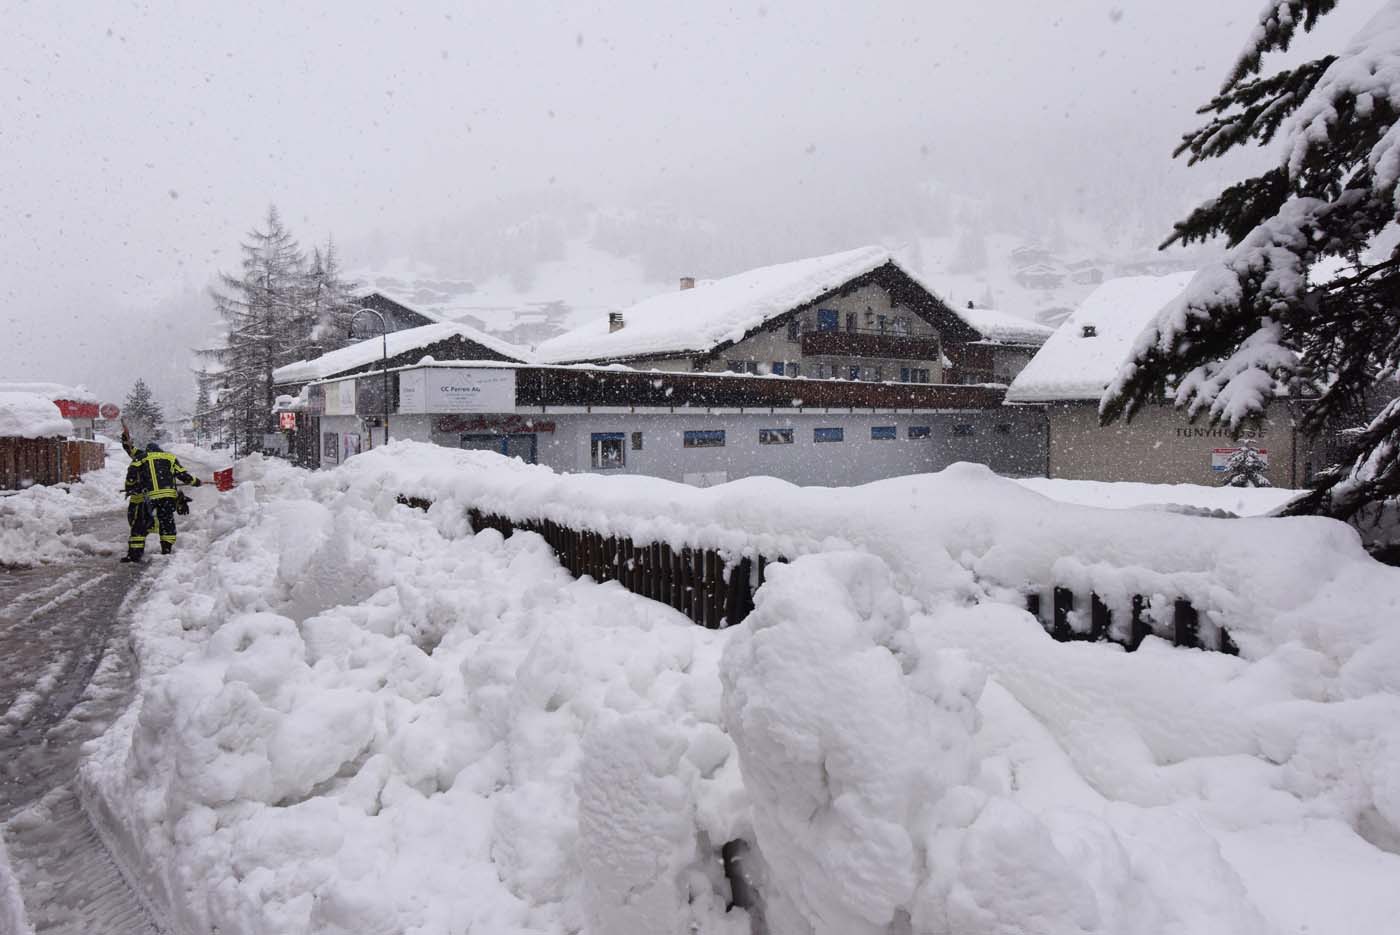 Unos 13 mil turistas bloqueados por la nieve en la estación de esquí suiza de Zermatt (fotos)